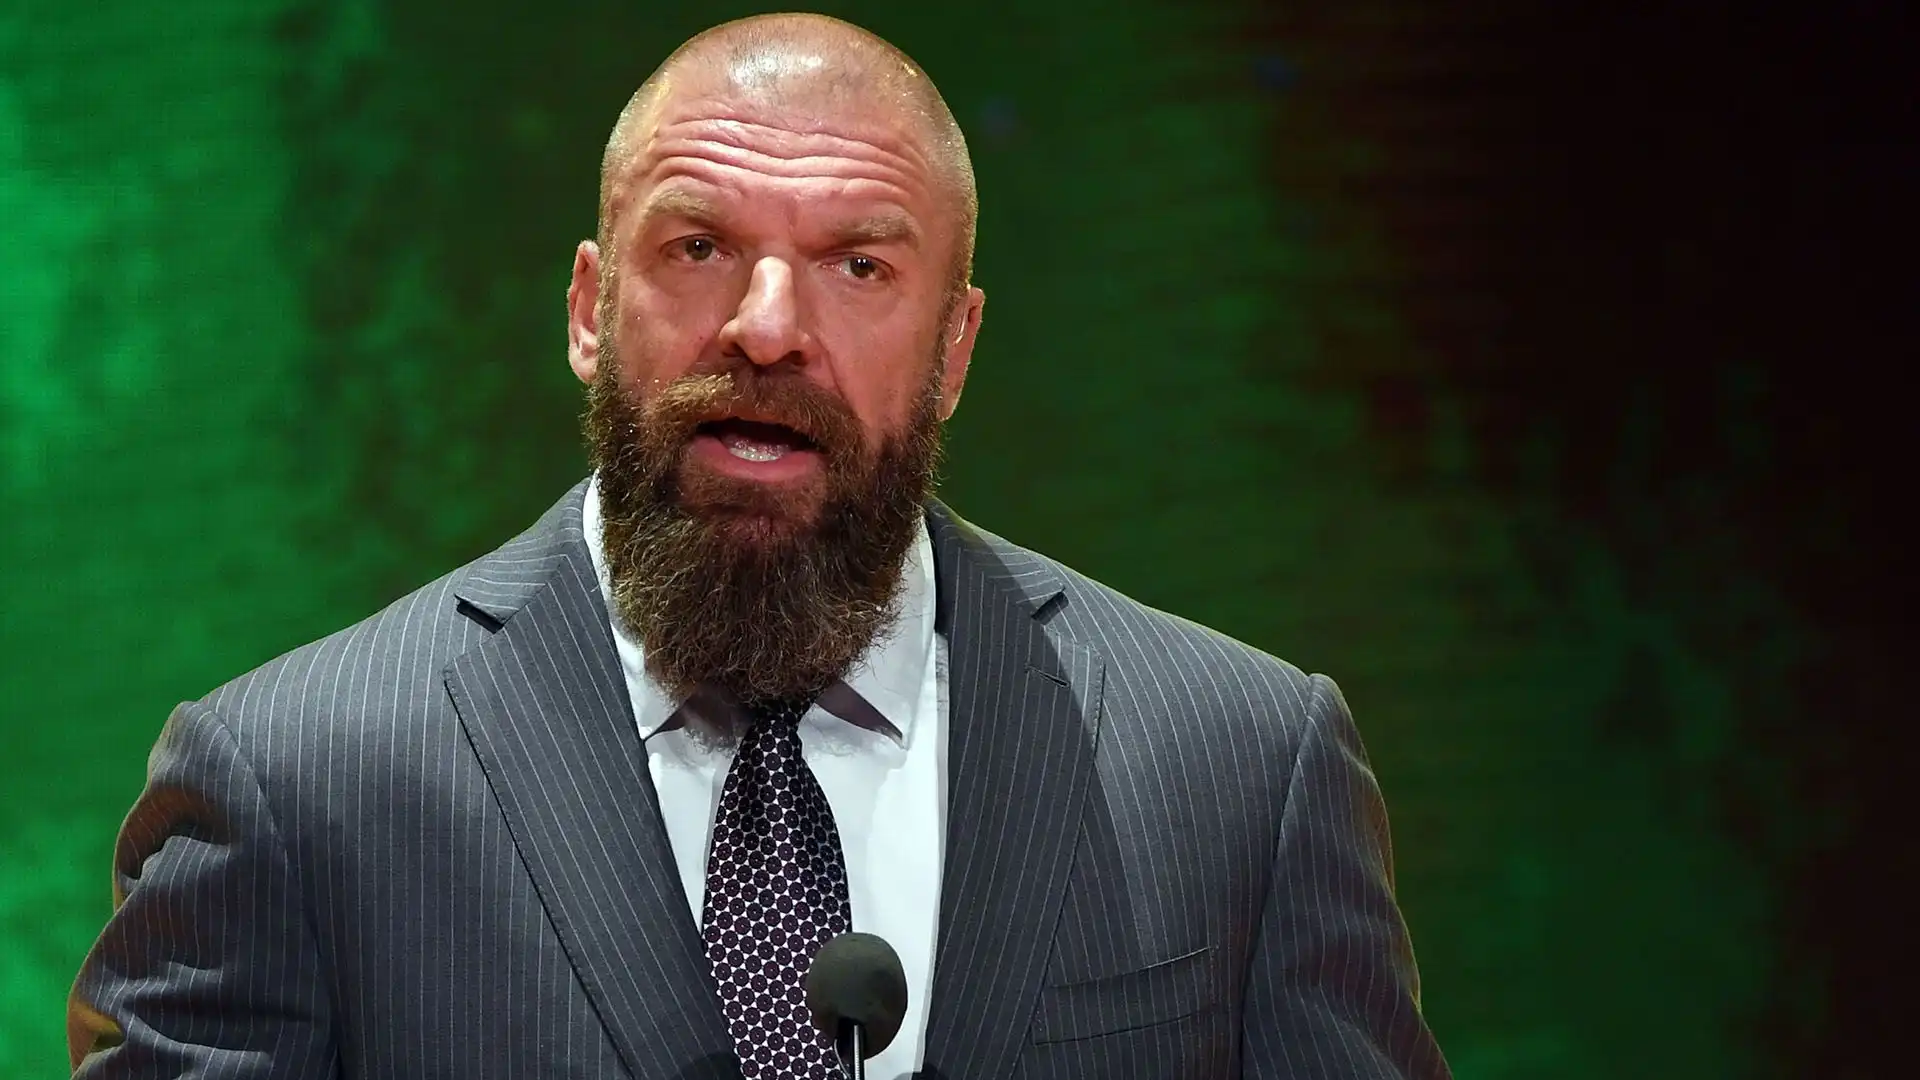 2 Triple H: patrimonio netto 250 milioni di dollari. Attuale vicepresidente esecutivo della WWE, 14 volte campione del mondo